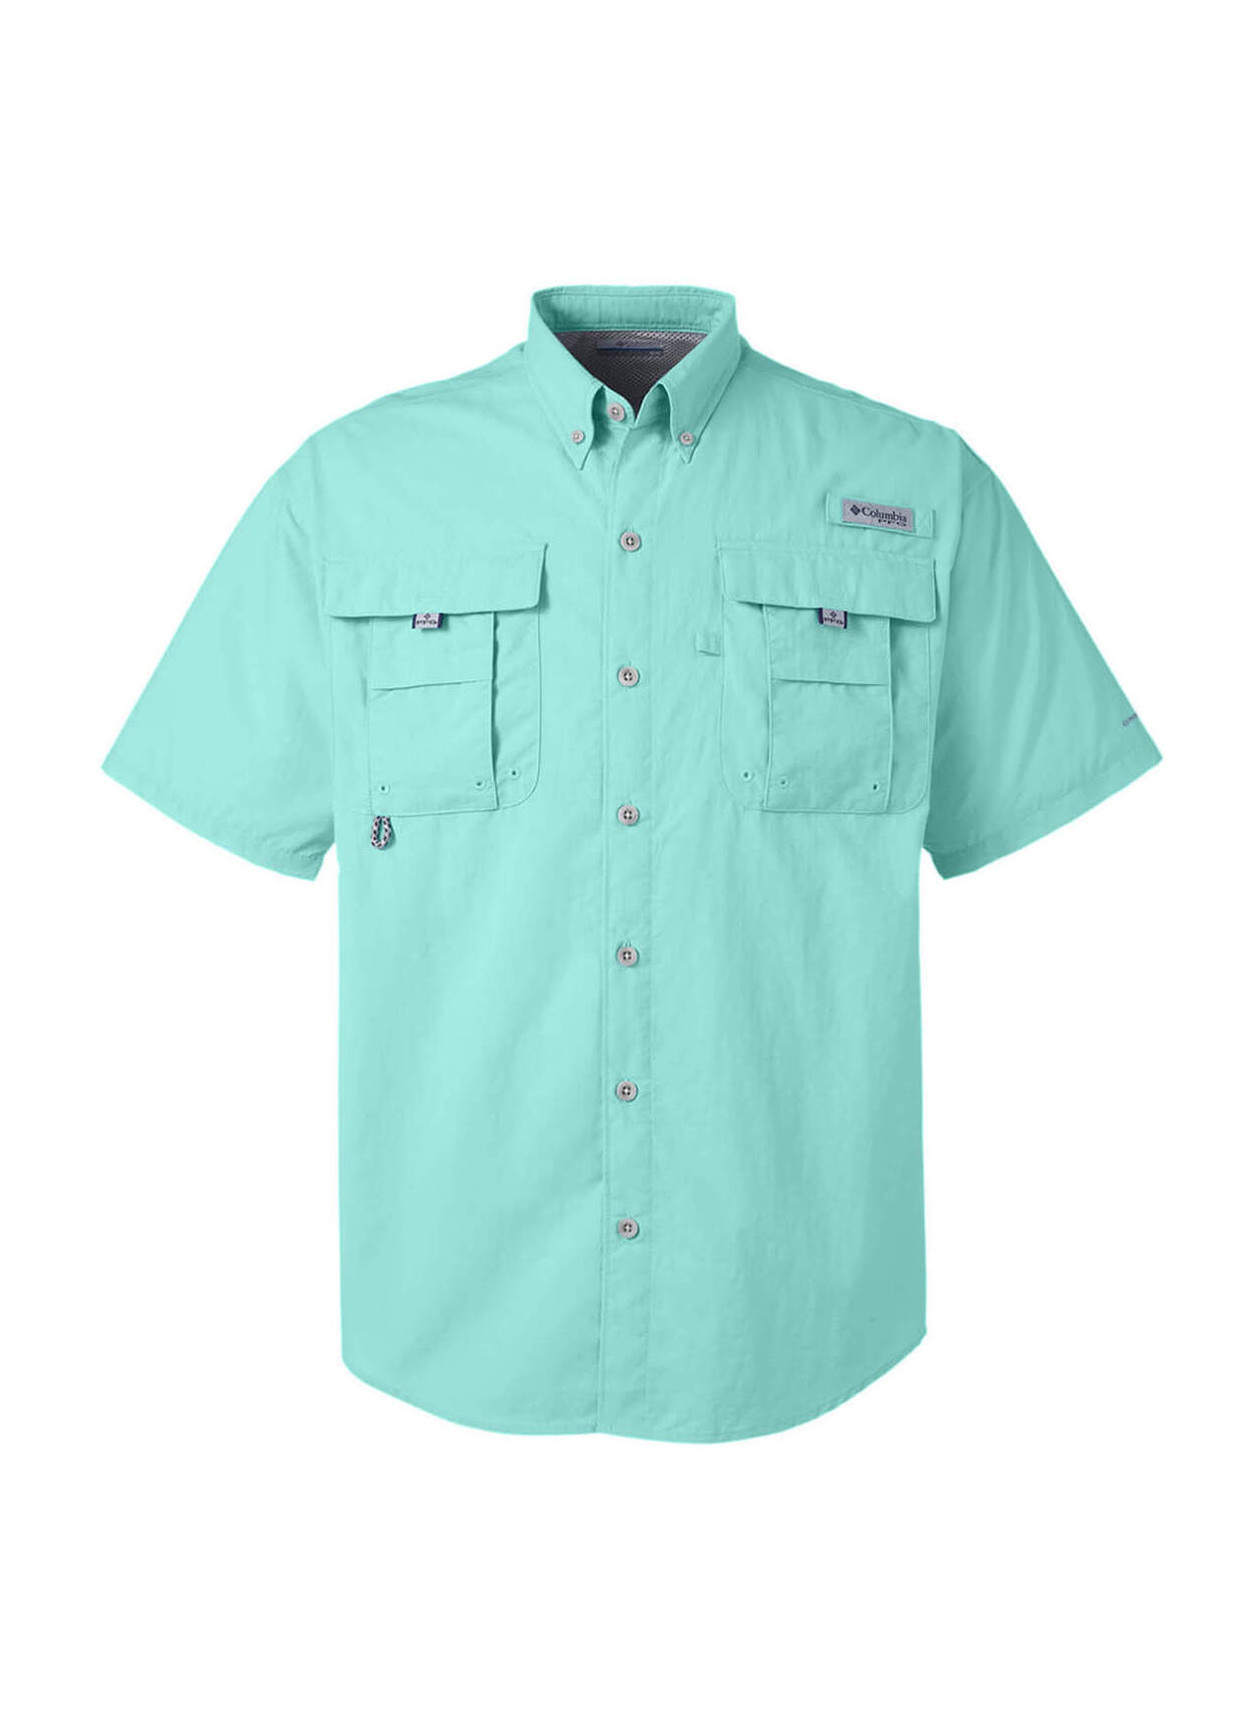 Columbia Men's Gulf Stream Bahama Short-Sleeve Shirt